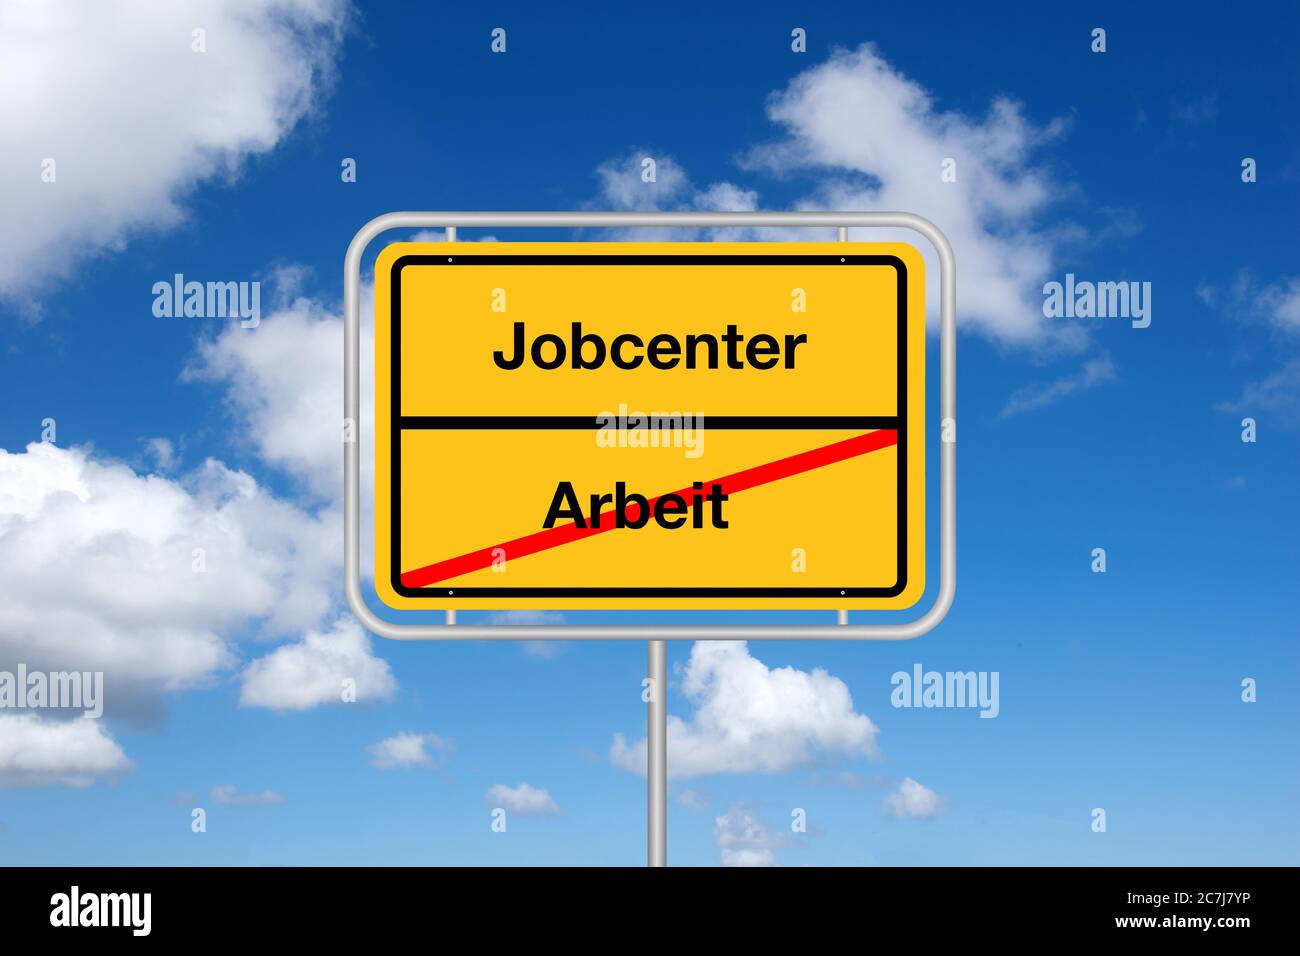 Señal de límite de la ciudad Jobcenter, Arbeit, Alemania Foto de stock